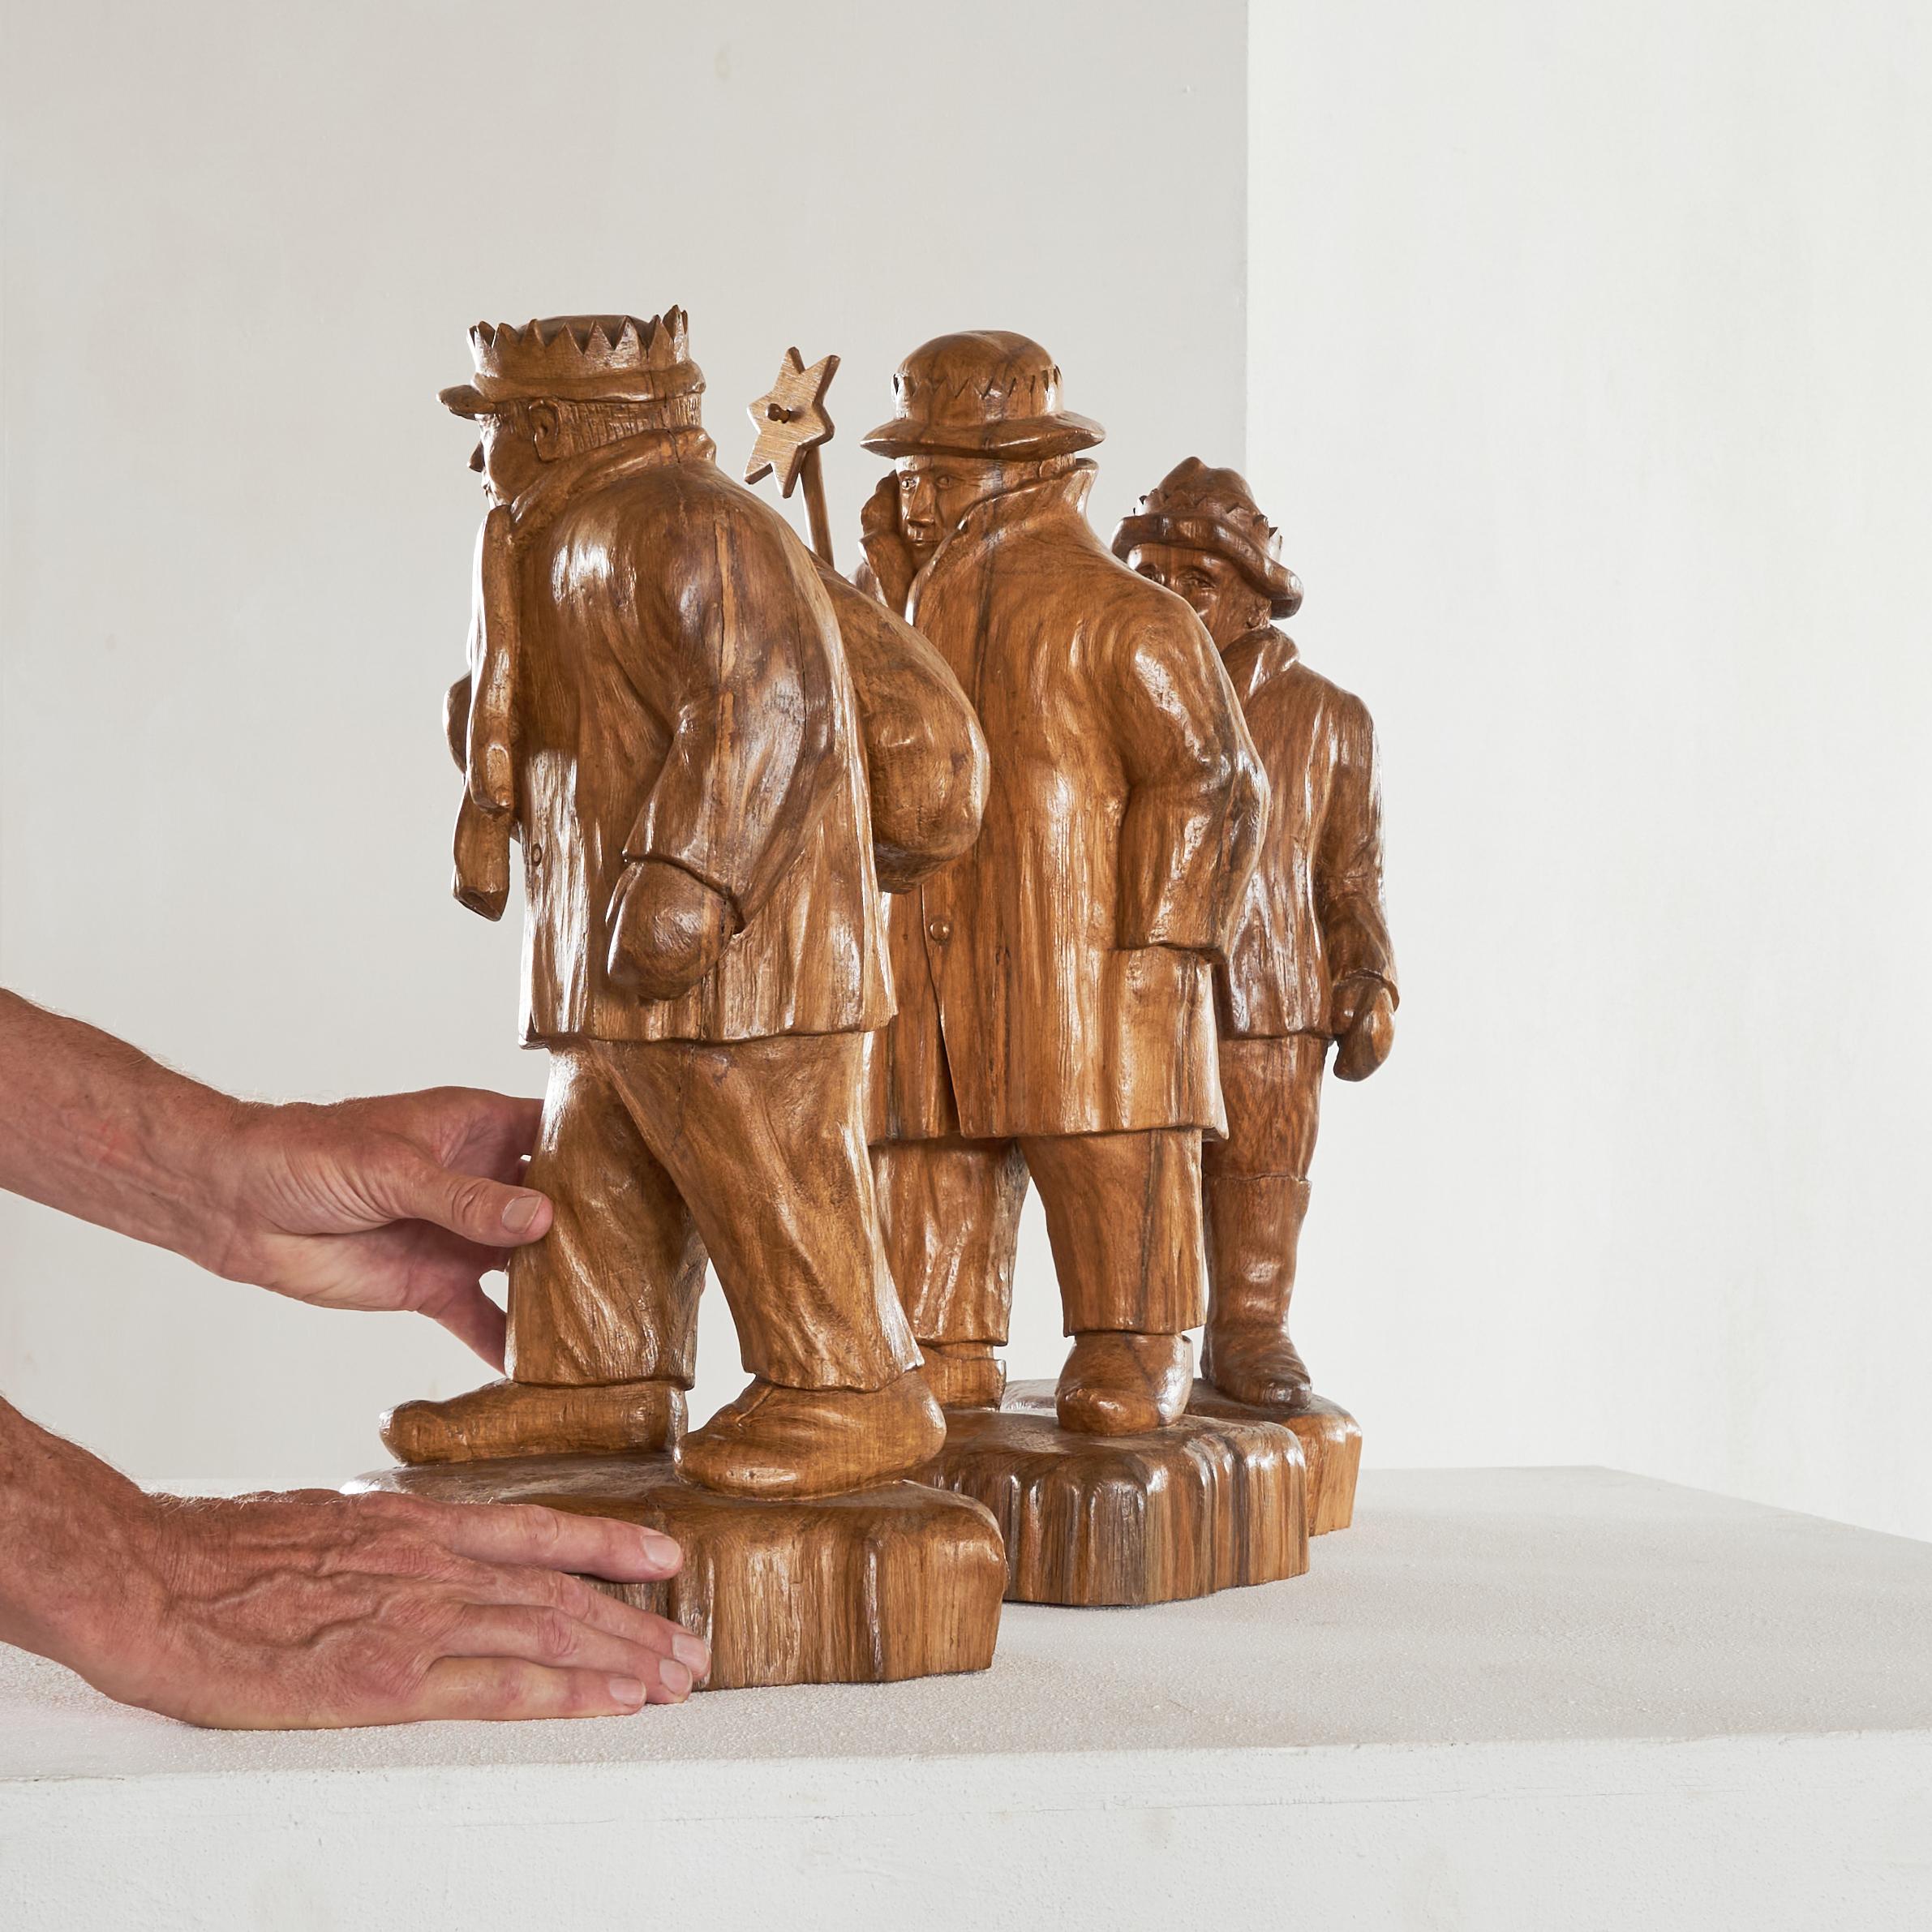 Brutalist Felix Timmermans '3 Wise Men' Flemish Folk Art Sculptures in Carved Wood 1970 For Sale